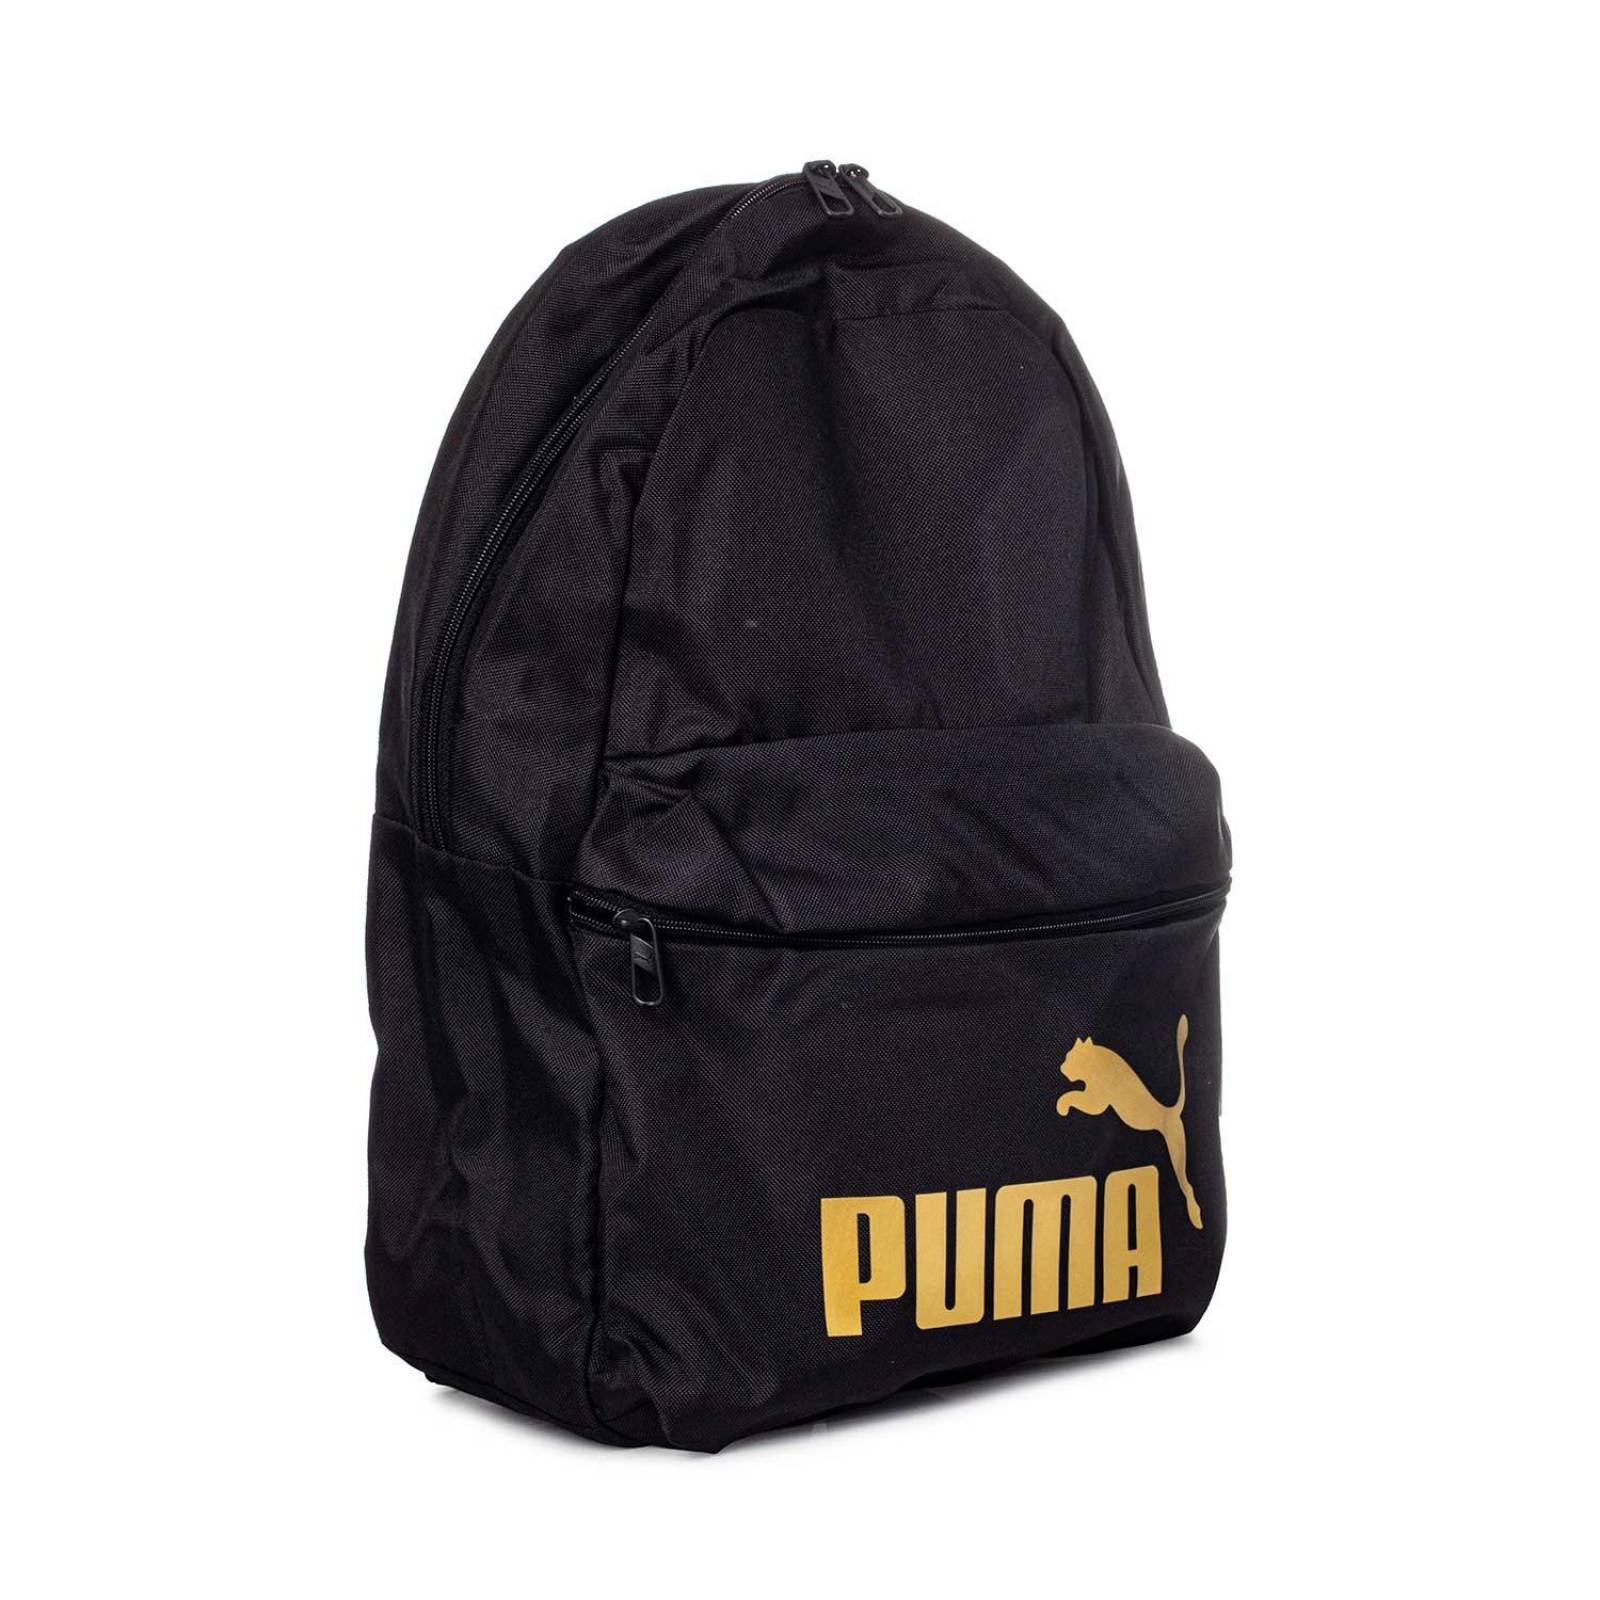 Mochila Puma 079943 01 Phase Backpack Negro